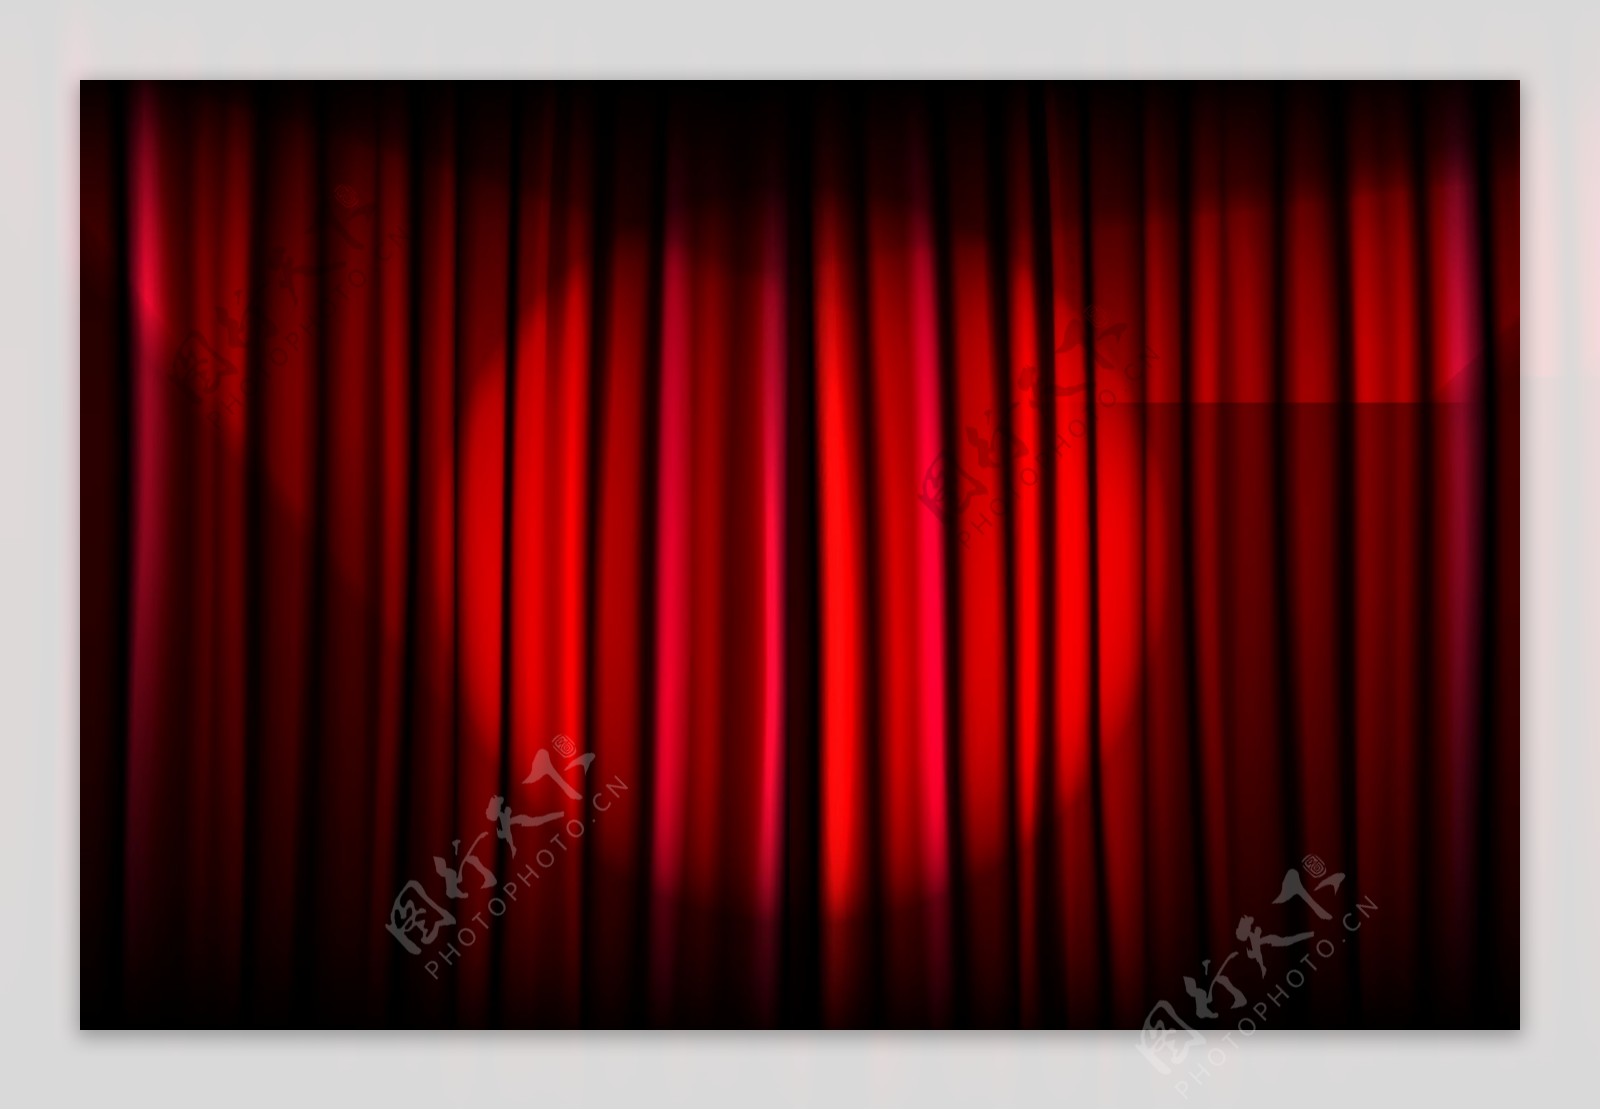 红色帷幕背景舞台矢量素材